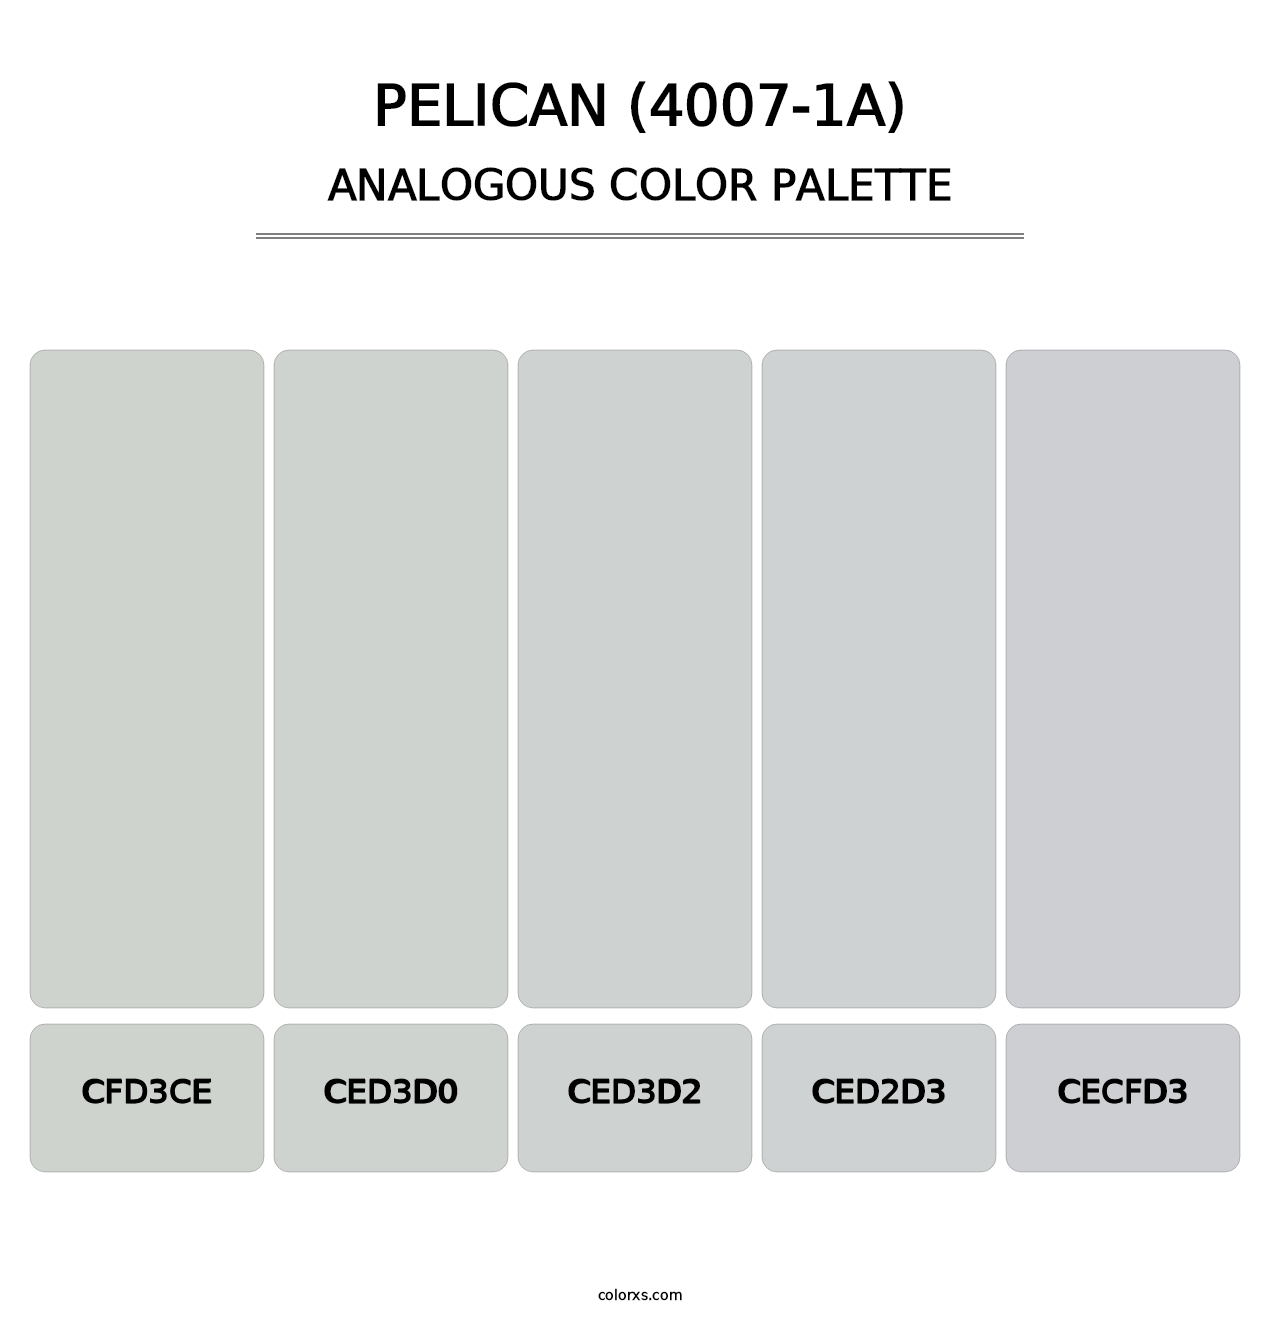 Pelican (4007-1A) - Analogous Color Palette